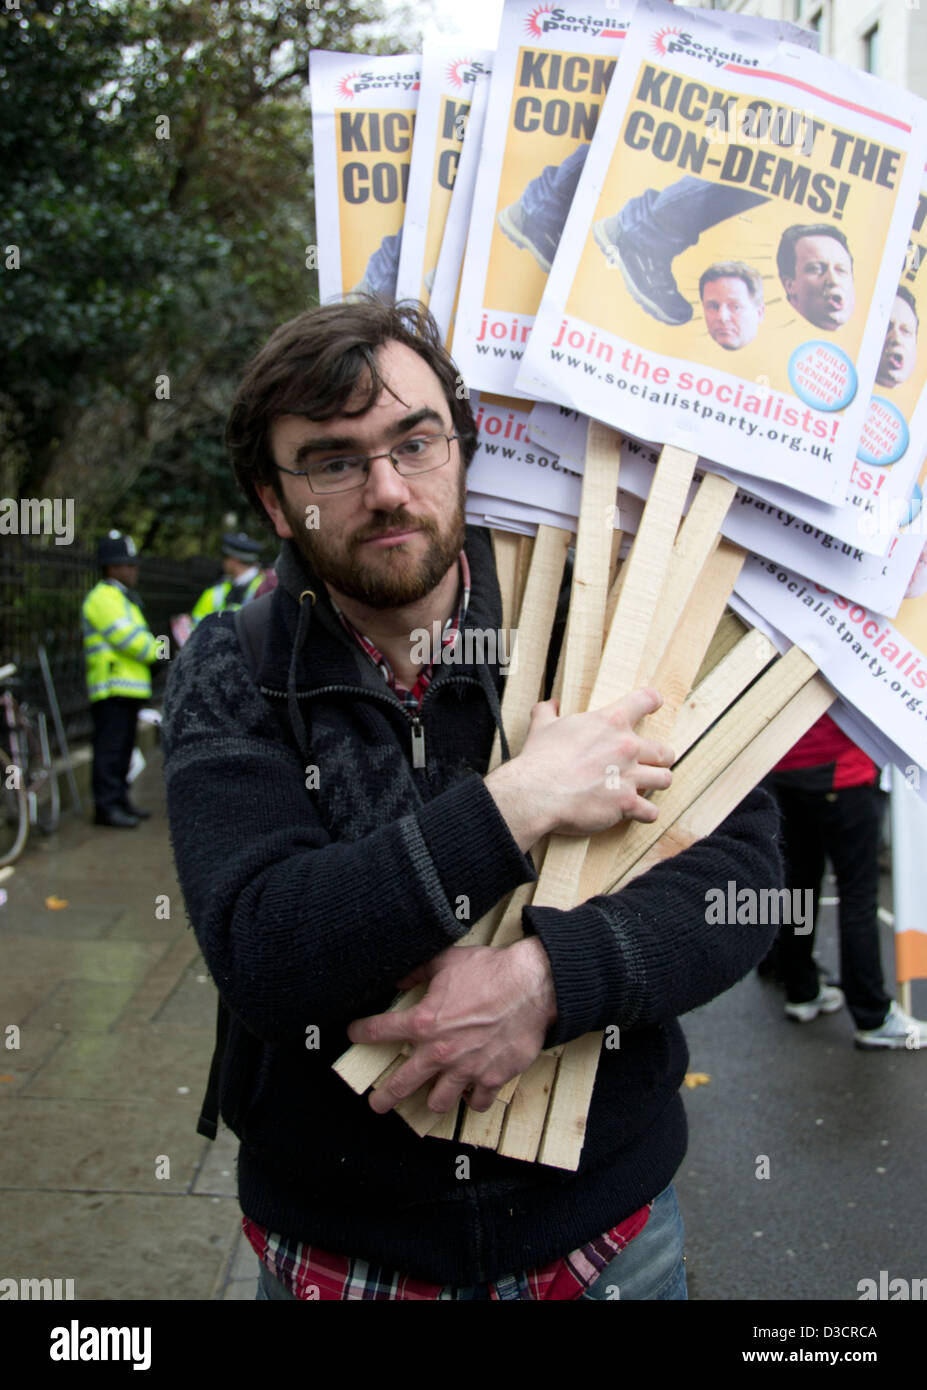 Hombre con gafas sosteniendo pancartas de protesta 'kick out la con-dems' en Londres protesta estudiantil 2012 con la policía en el fondo. Foto de stock